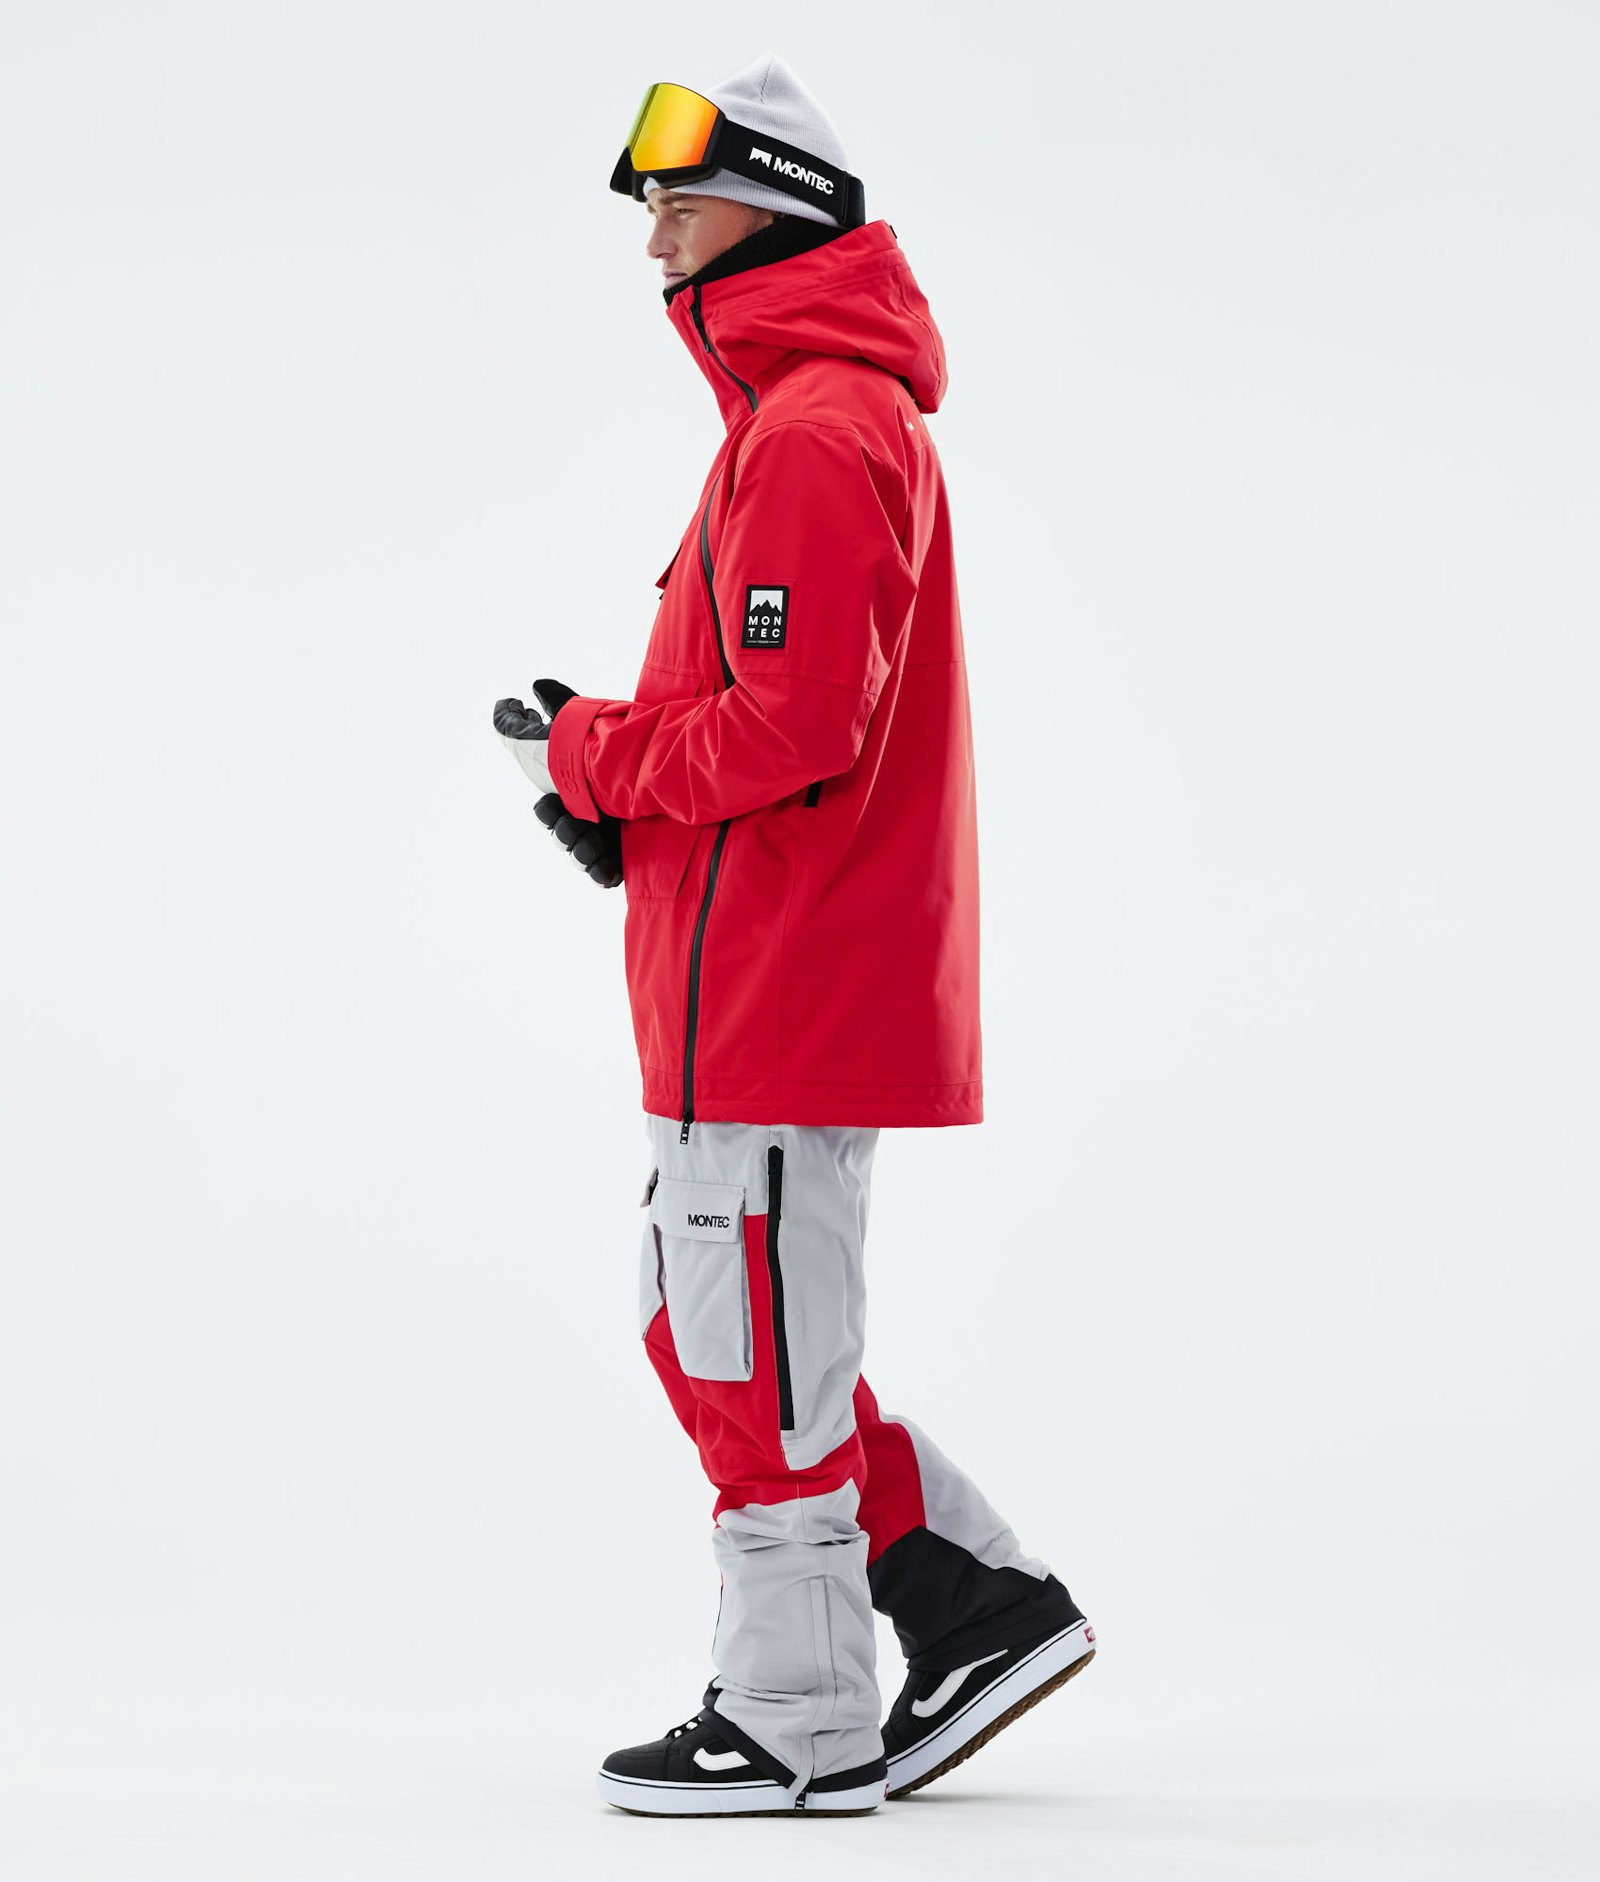 Montec Doom 2021 Snowboard Jacket Men Red